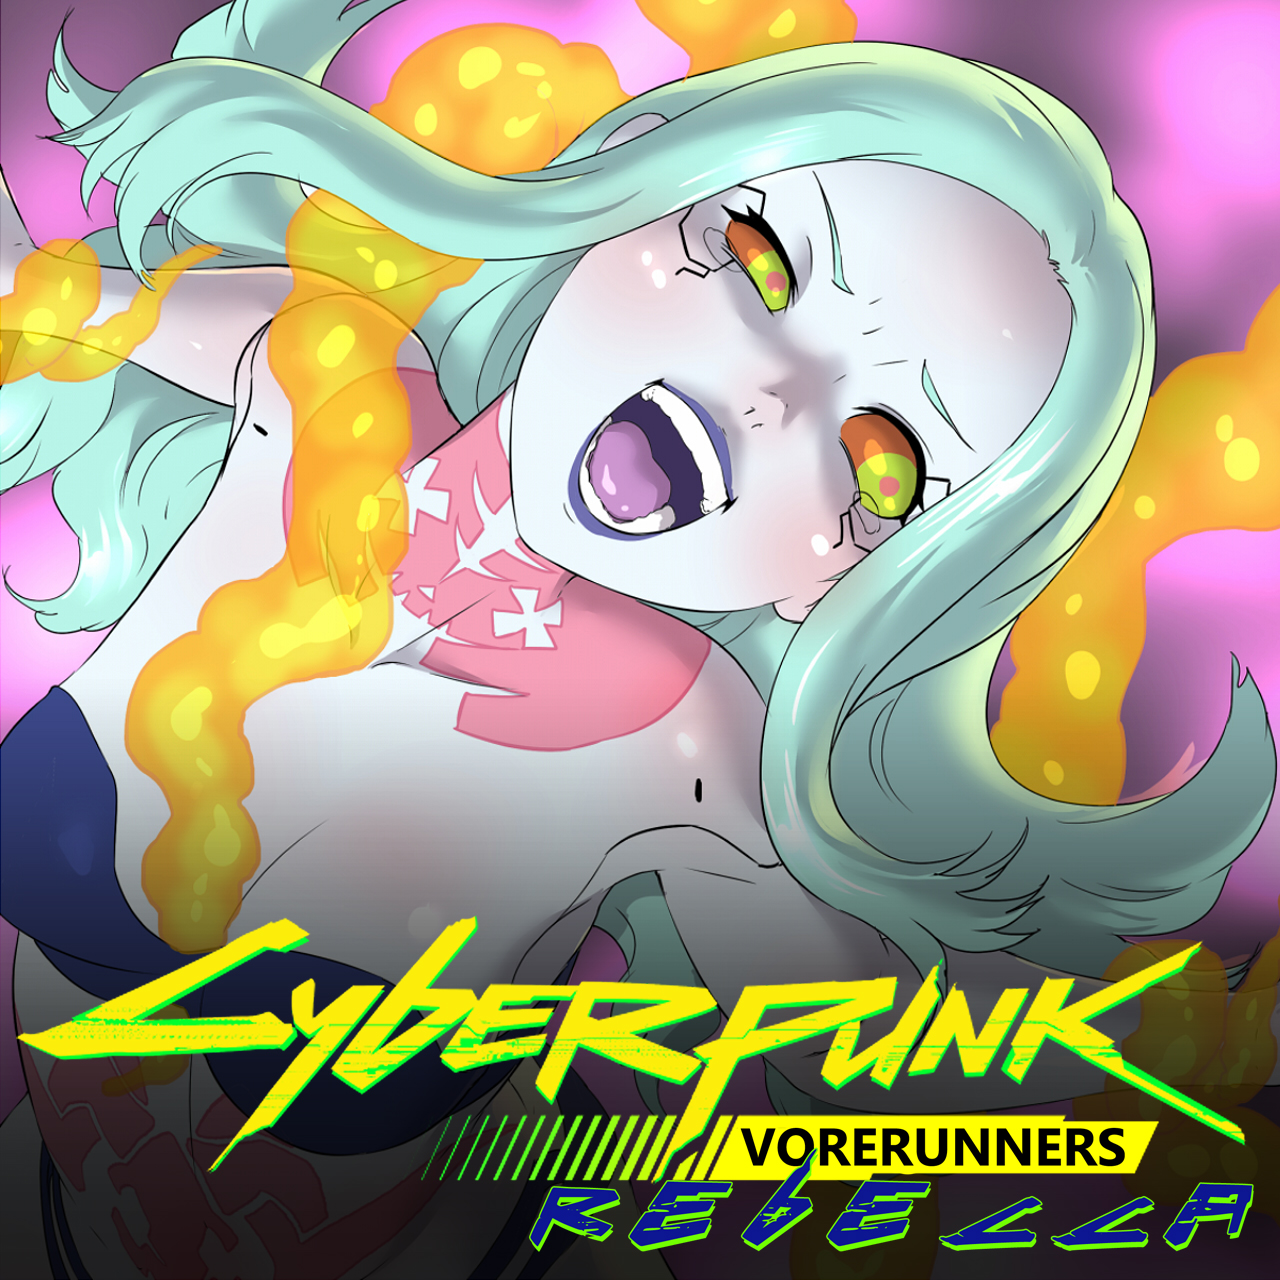 Cyberpunk Vorerunners: Rebecca